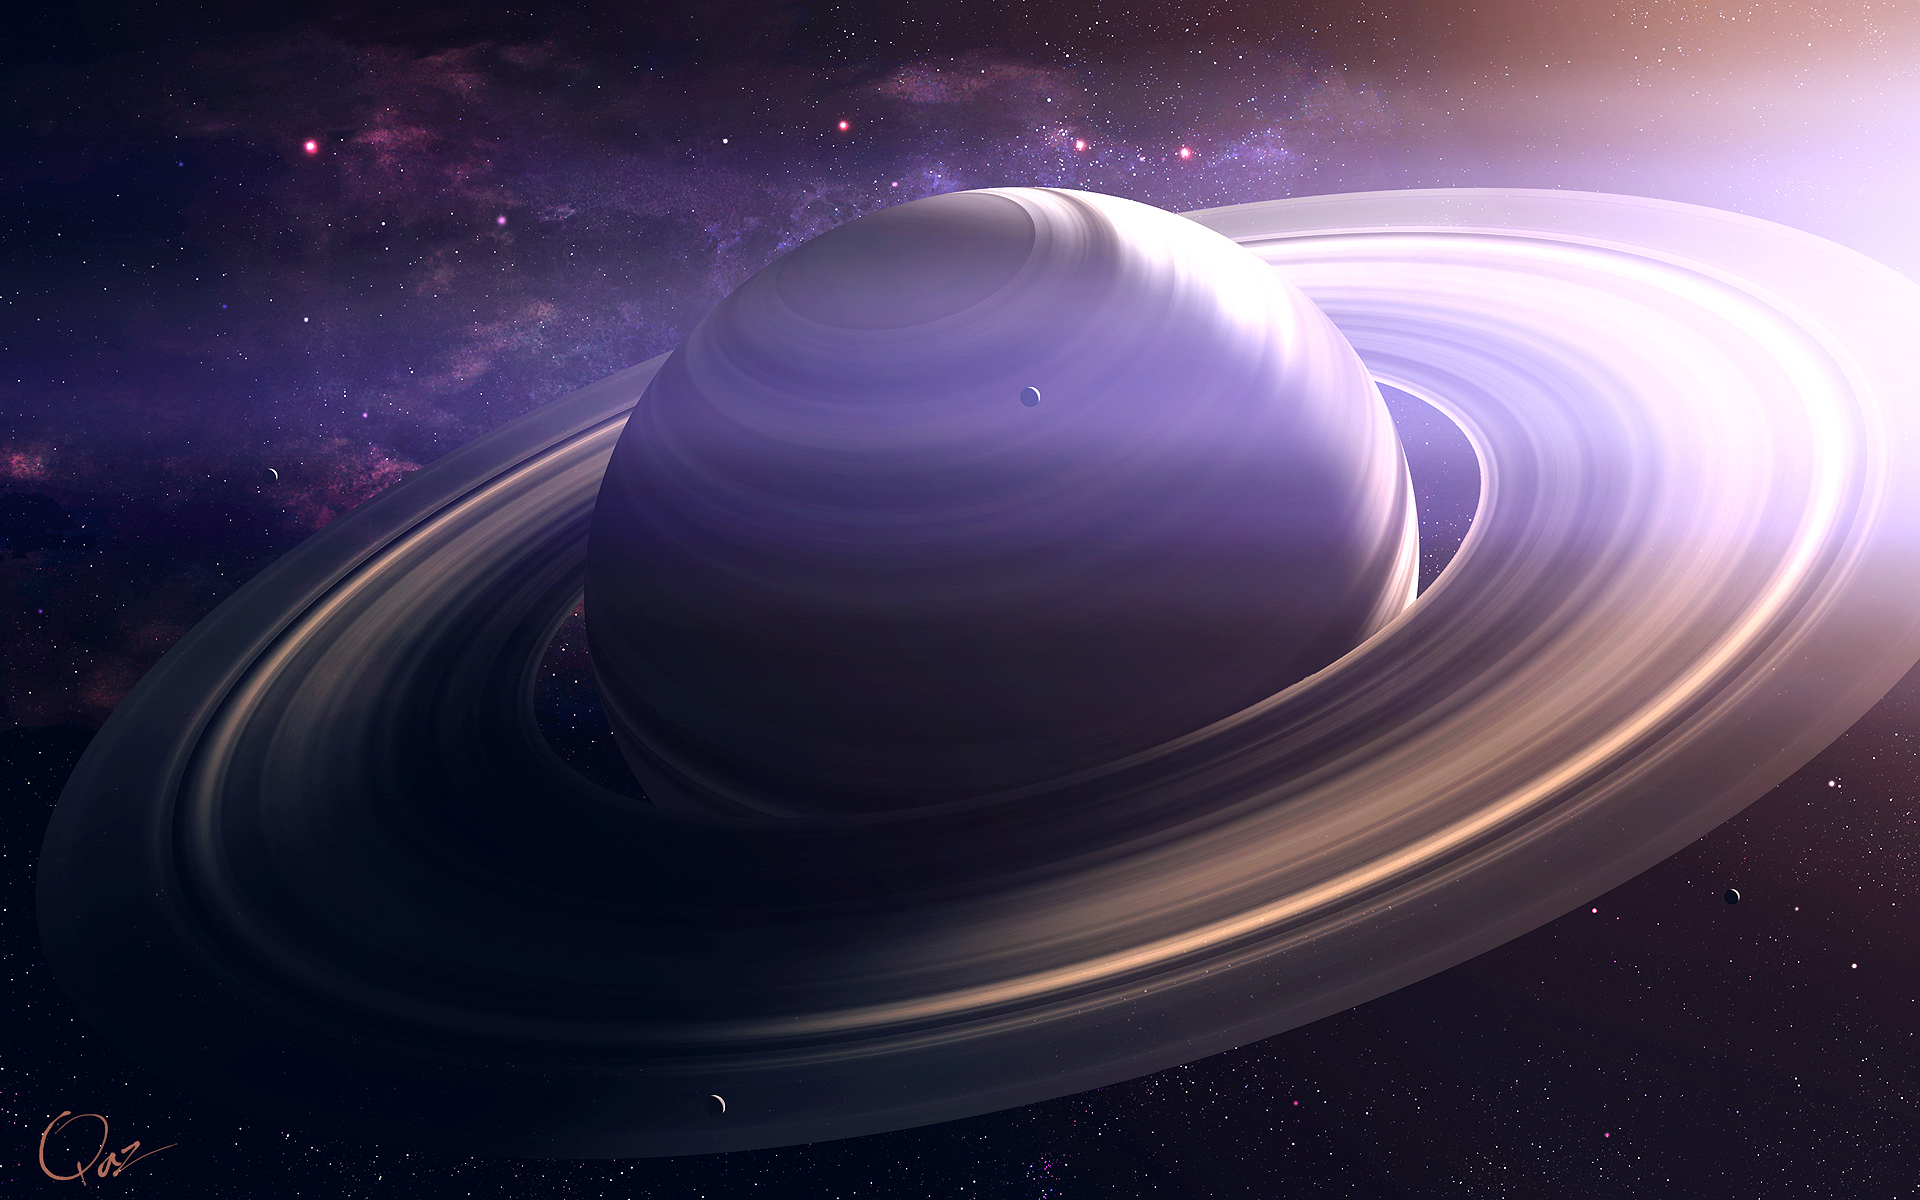 Saturne2